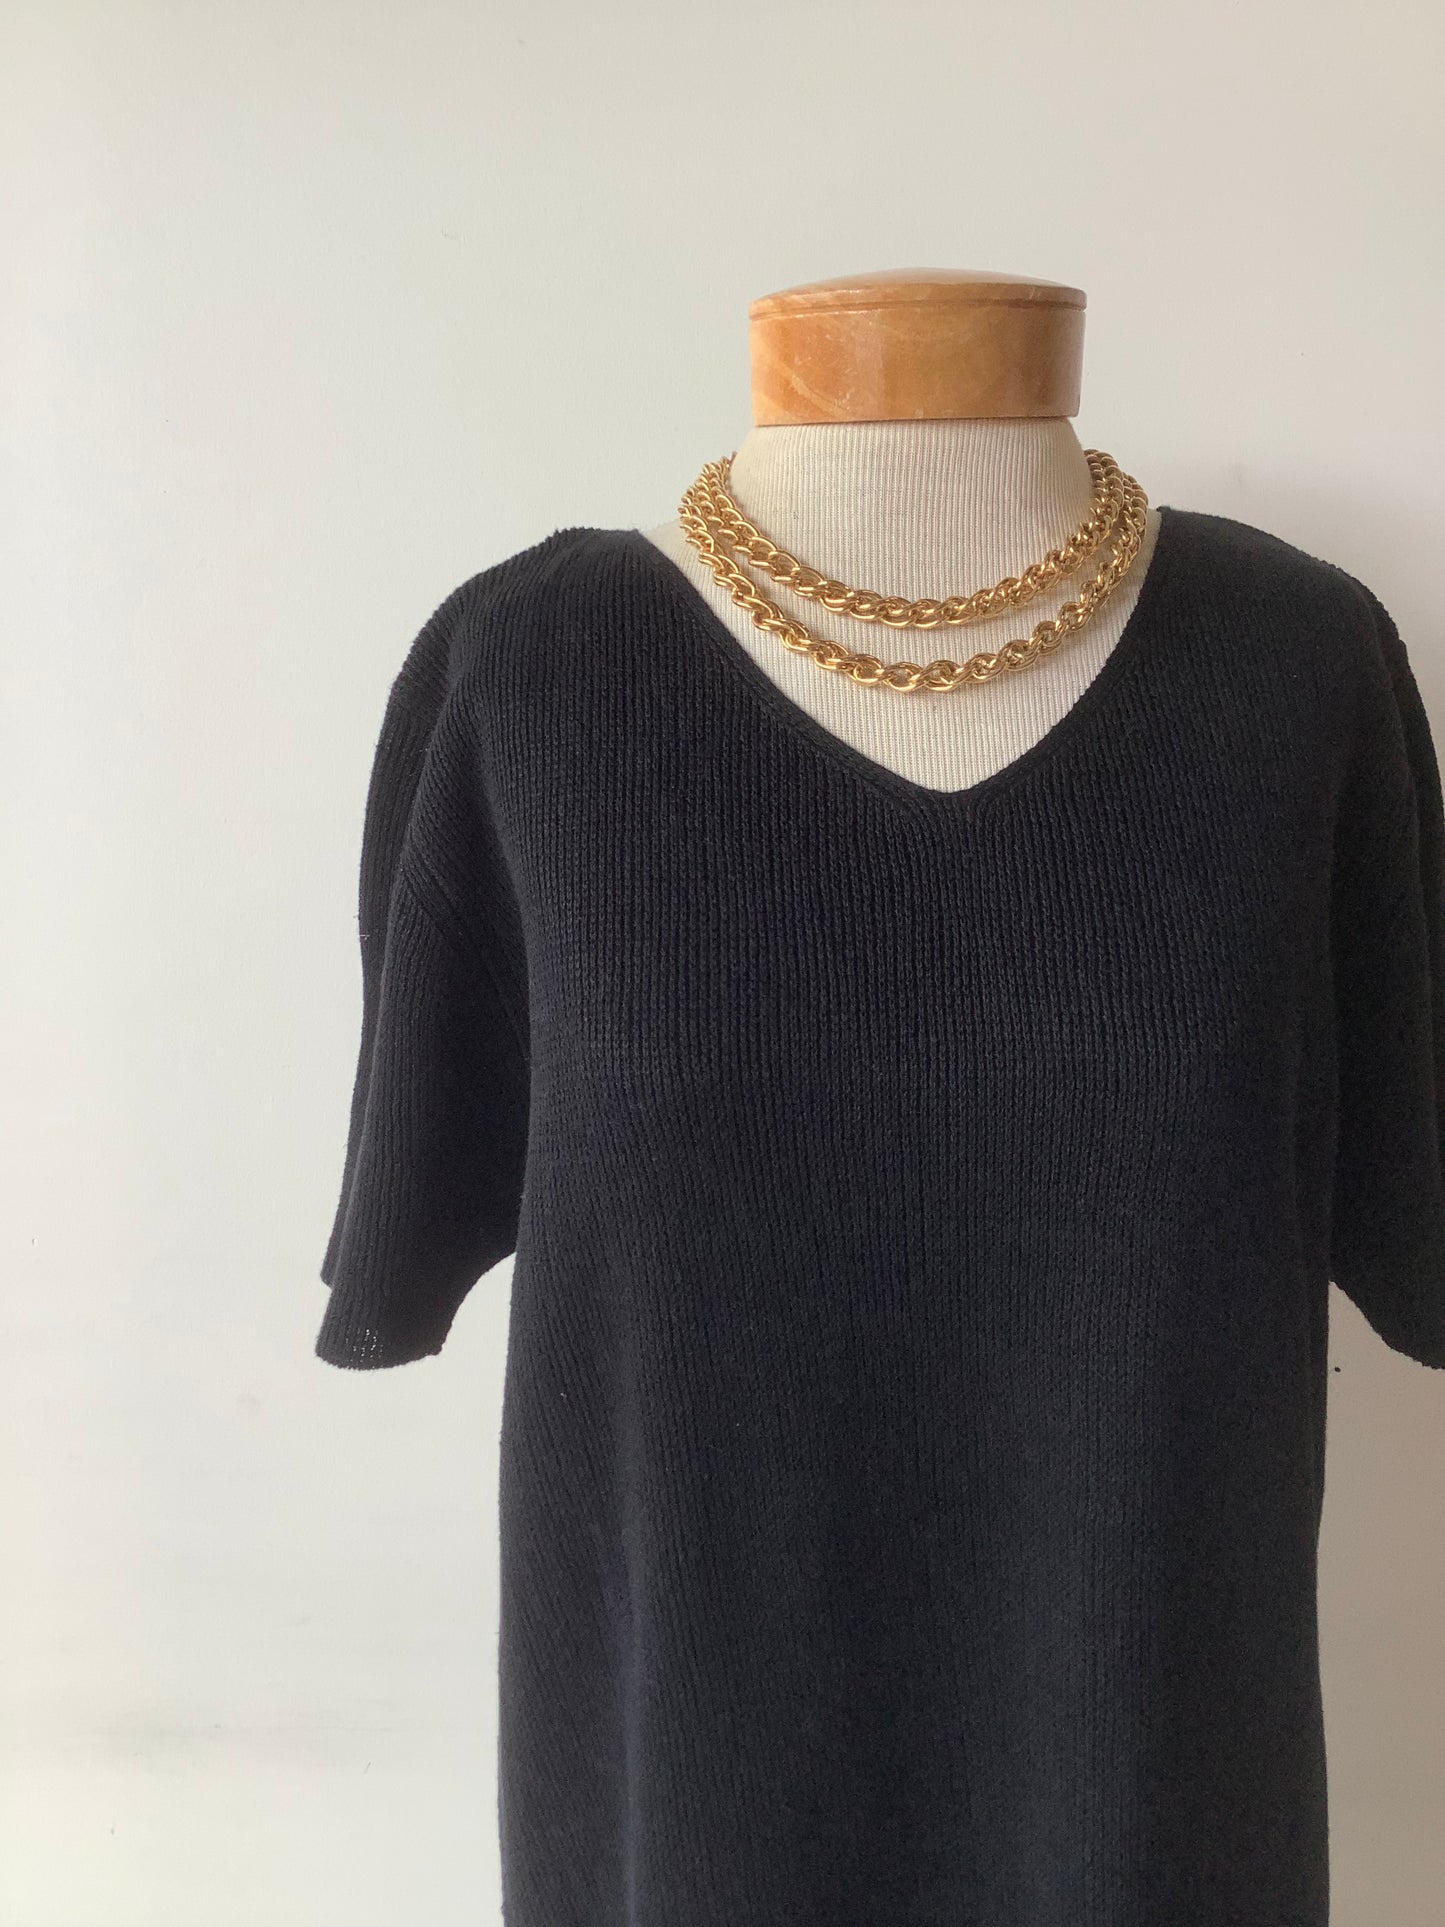 Linen knit midi dress